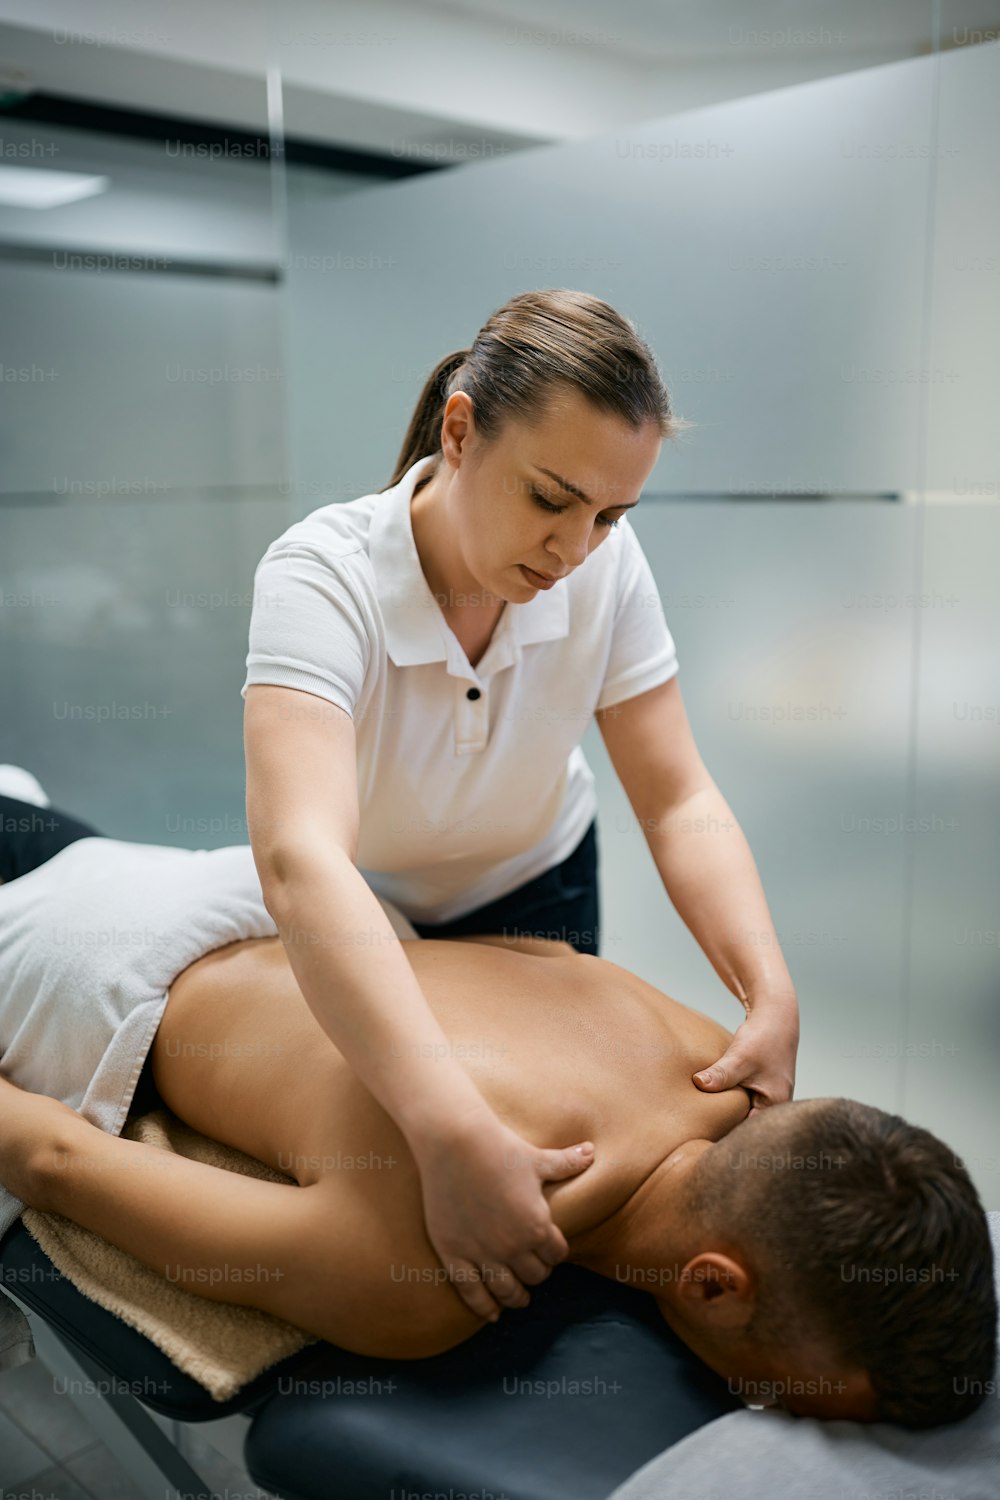 Kinésithérapeute massant les épaules d’un homme pendant la physiothérapie sportive.